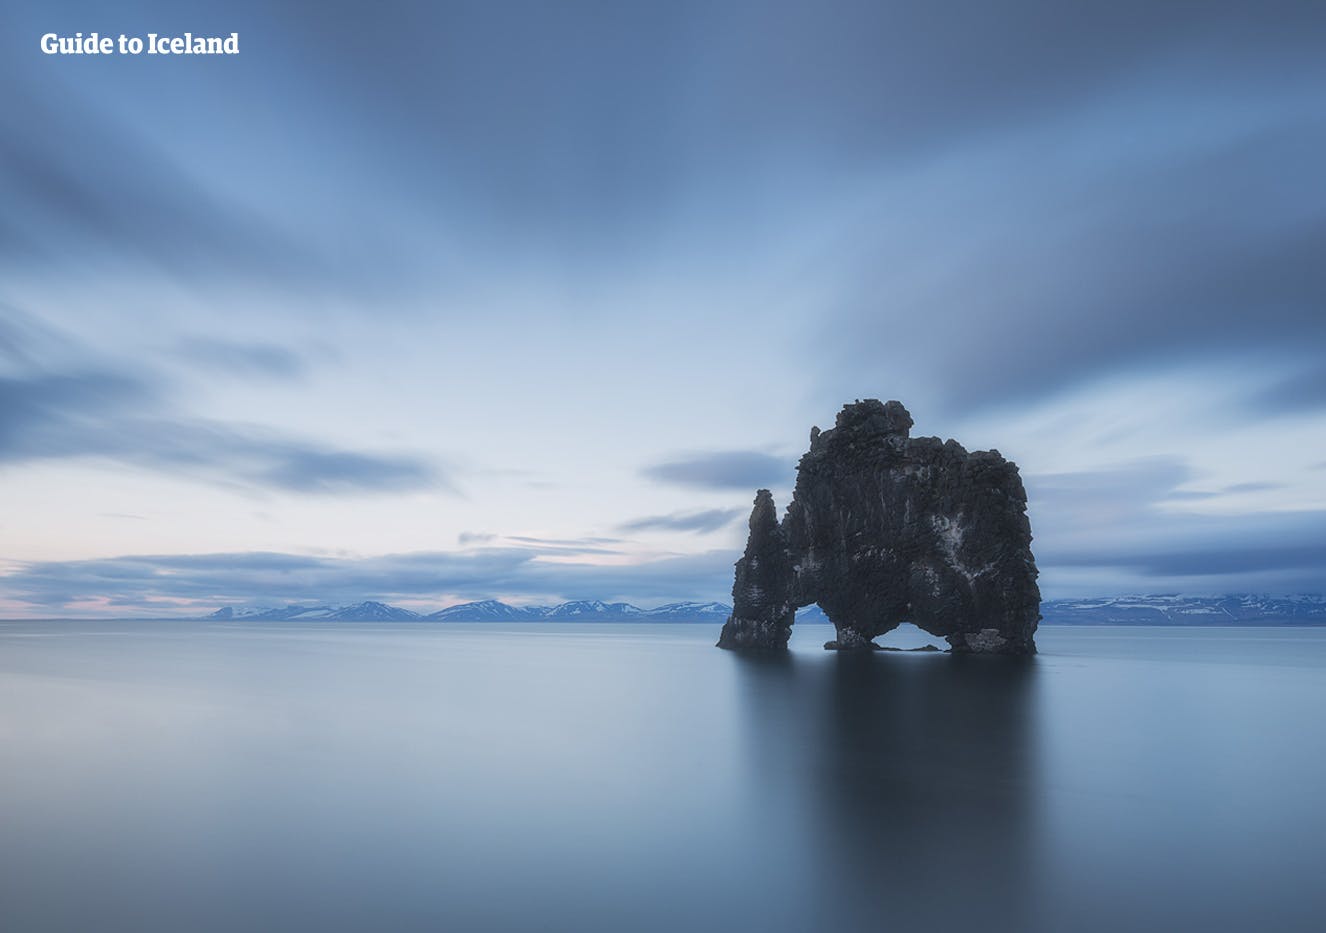 ก้อนหินโดดเด่นที่งดงามที่ชื่อว่าฮวิทแซร์คูร์ในทางเหนือของประเทศไอซ์แลนด์.